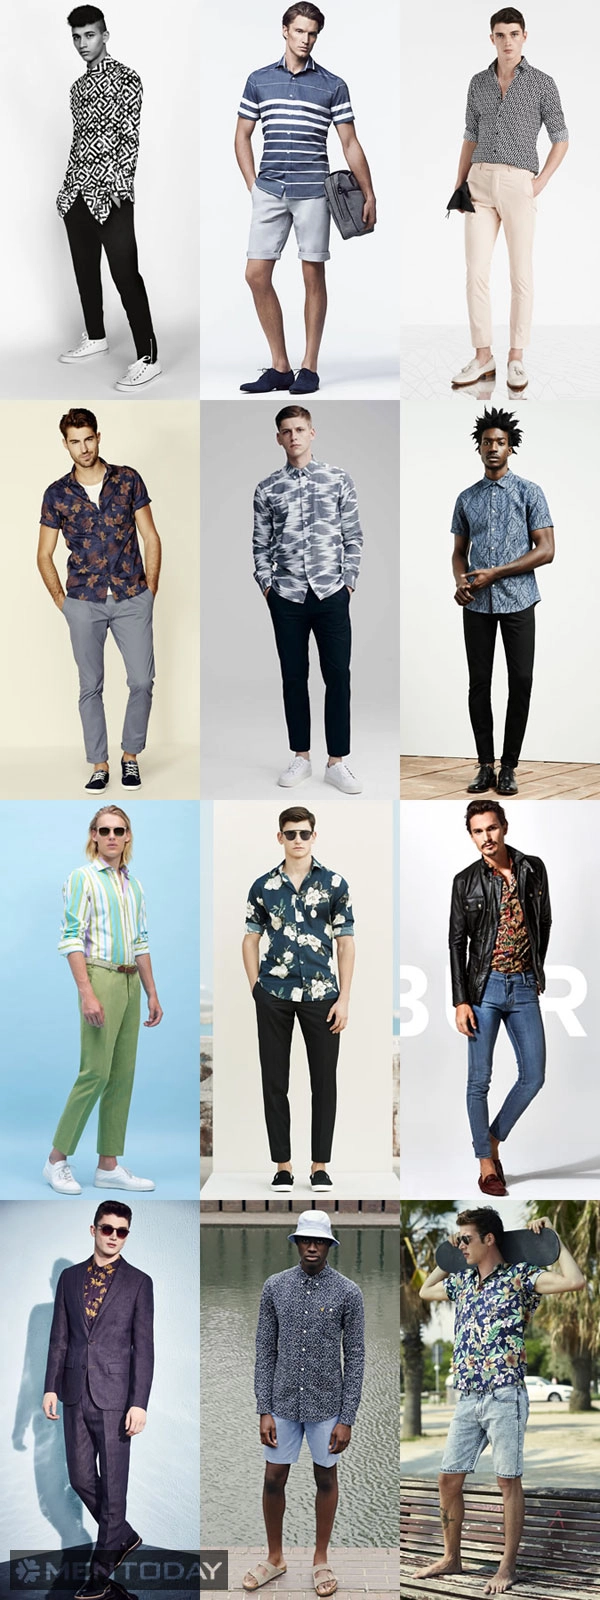 Xu hướng thời trang nam xuân hè 2015 4 items chính - 2